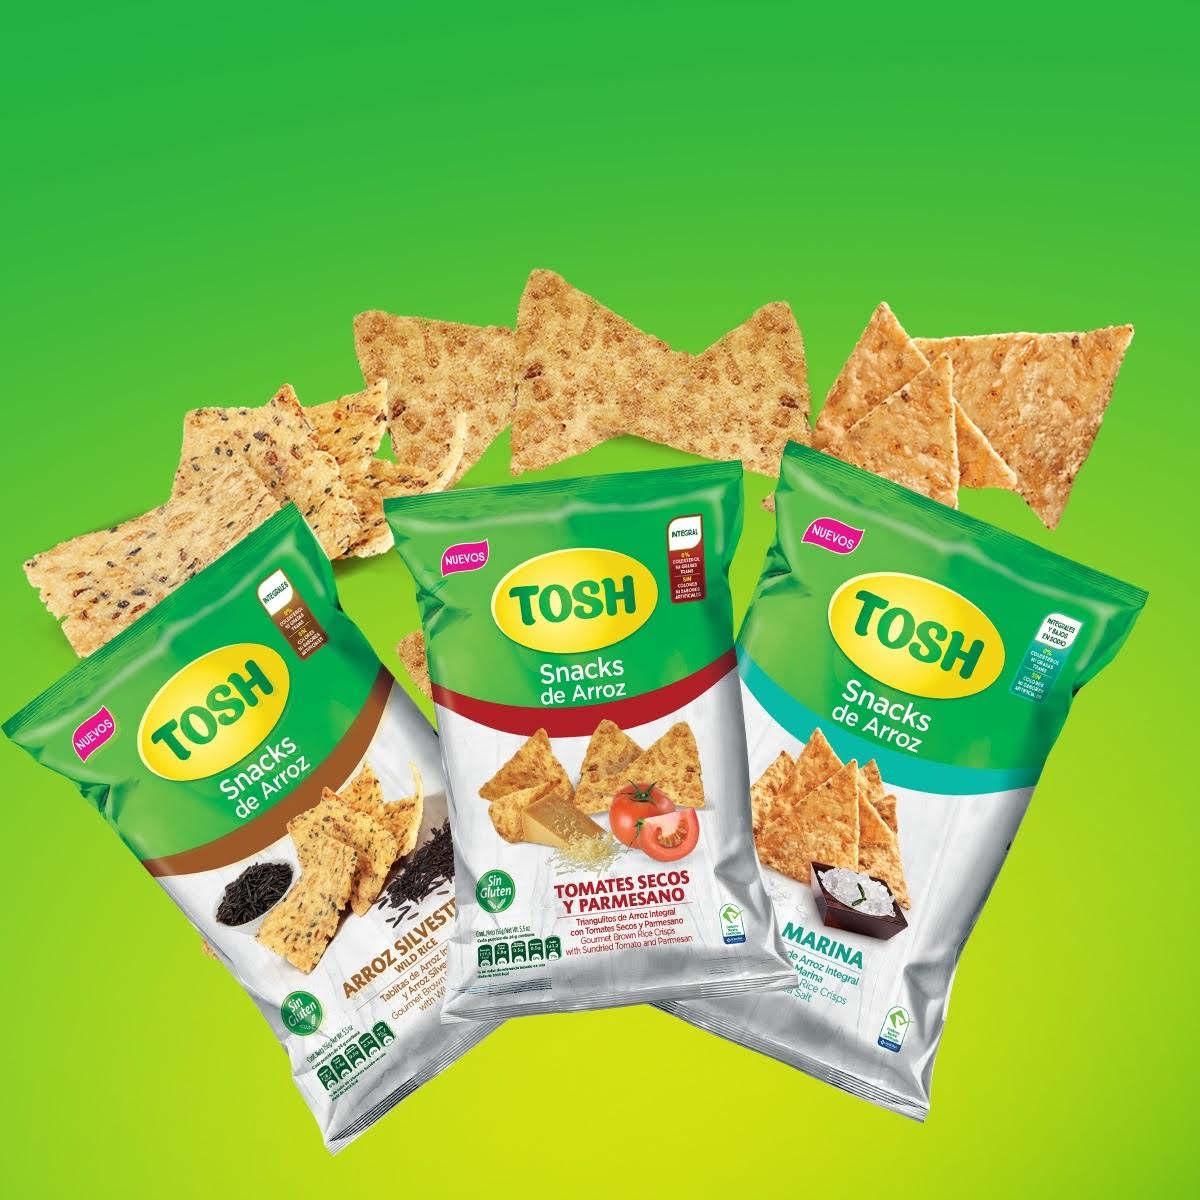 TOSH lanza tres nuevos Snacks saludables libres de gluten